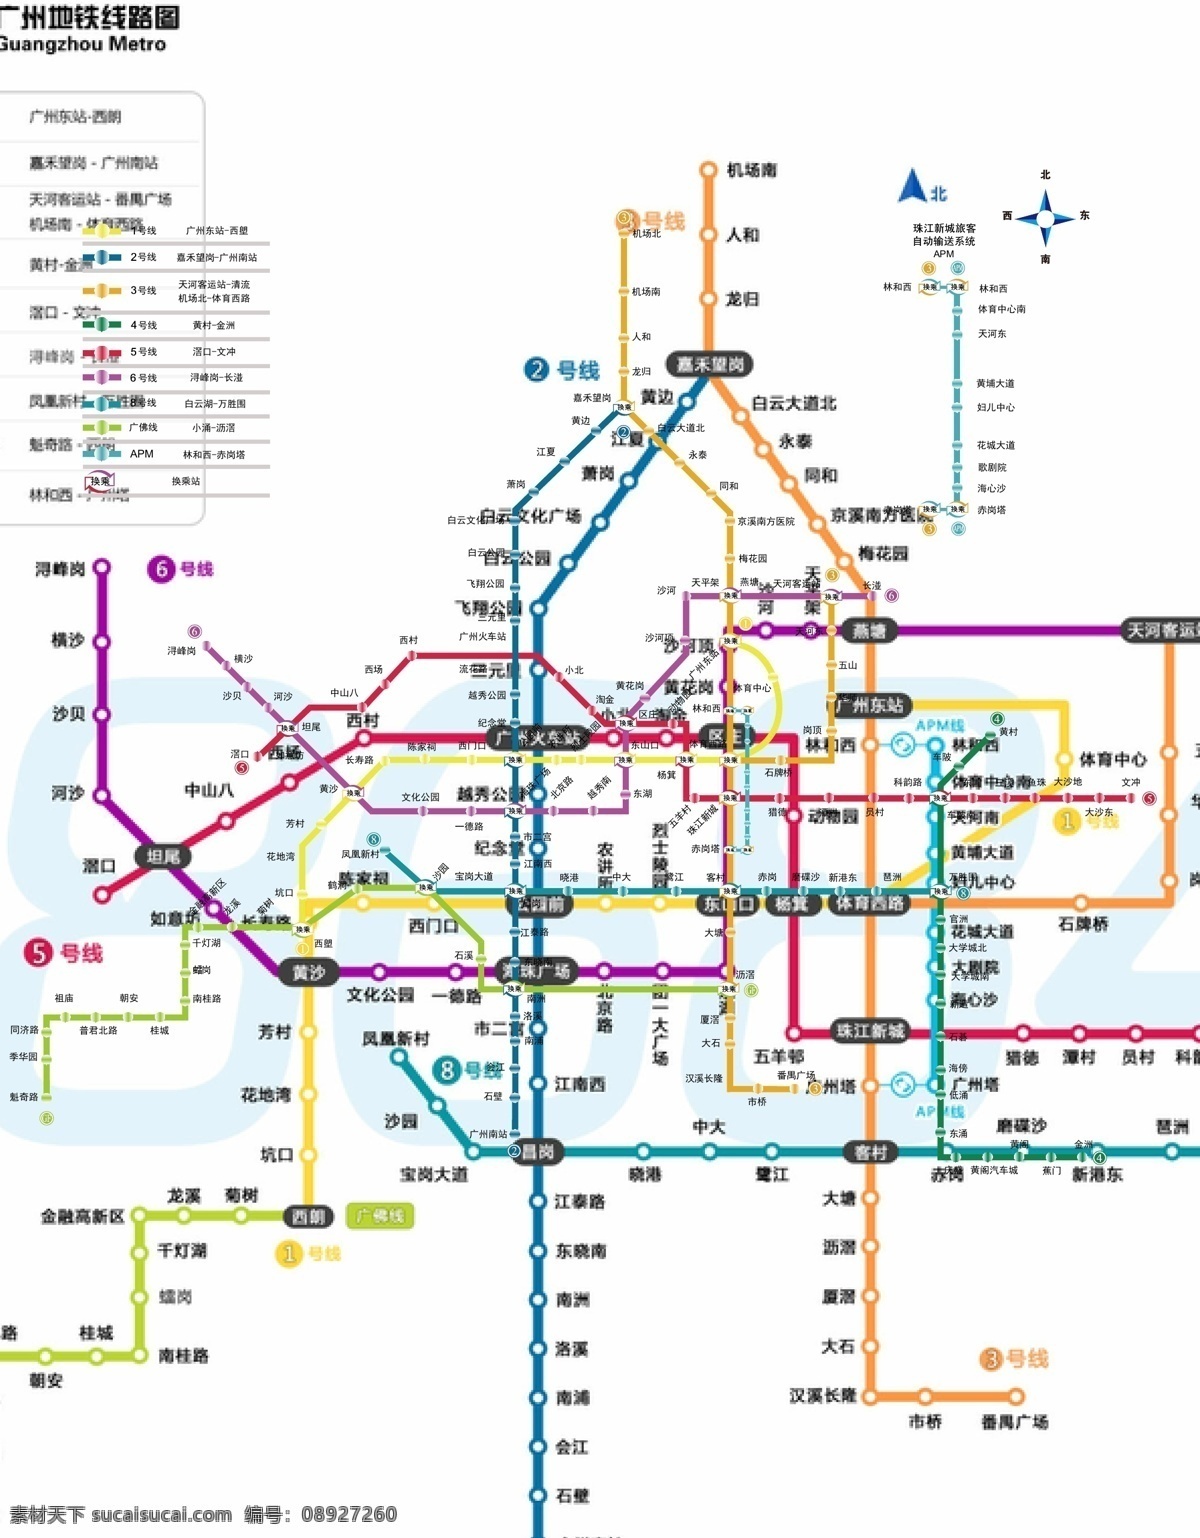 地铁 广州地铁 交通工具 现代科技 广州 线路图 矢量 模板下载 2013 地铁6号线 广州地铁最新 地铁交通 矢量图